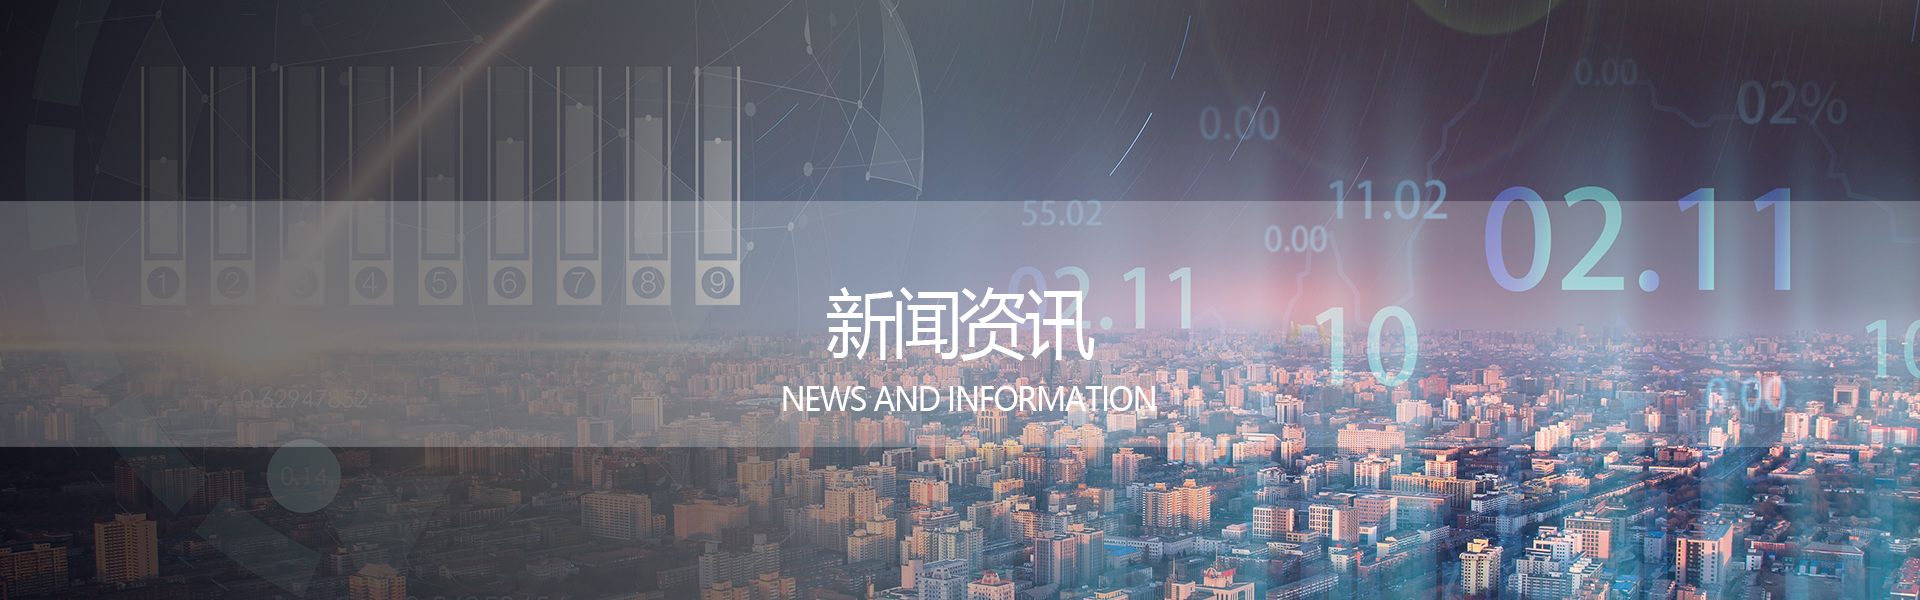 智能音频、无限未来---2020中国音频技术大会成功举办_行业动态_万利达丨万利达音响